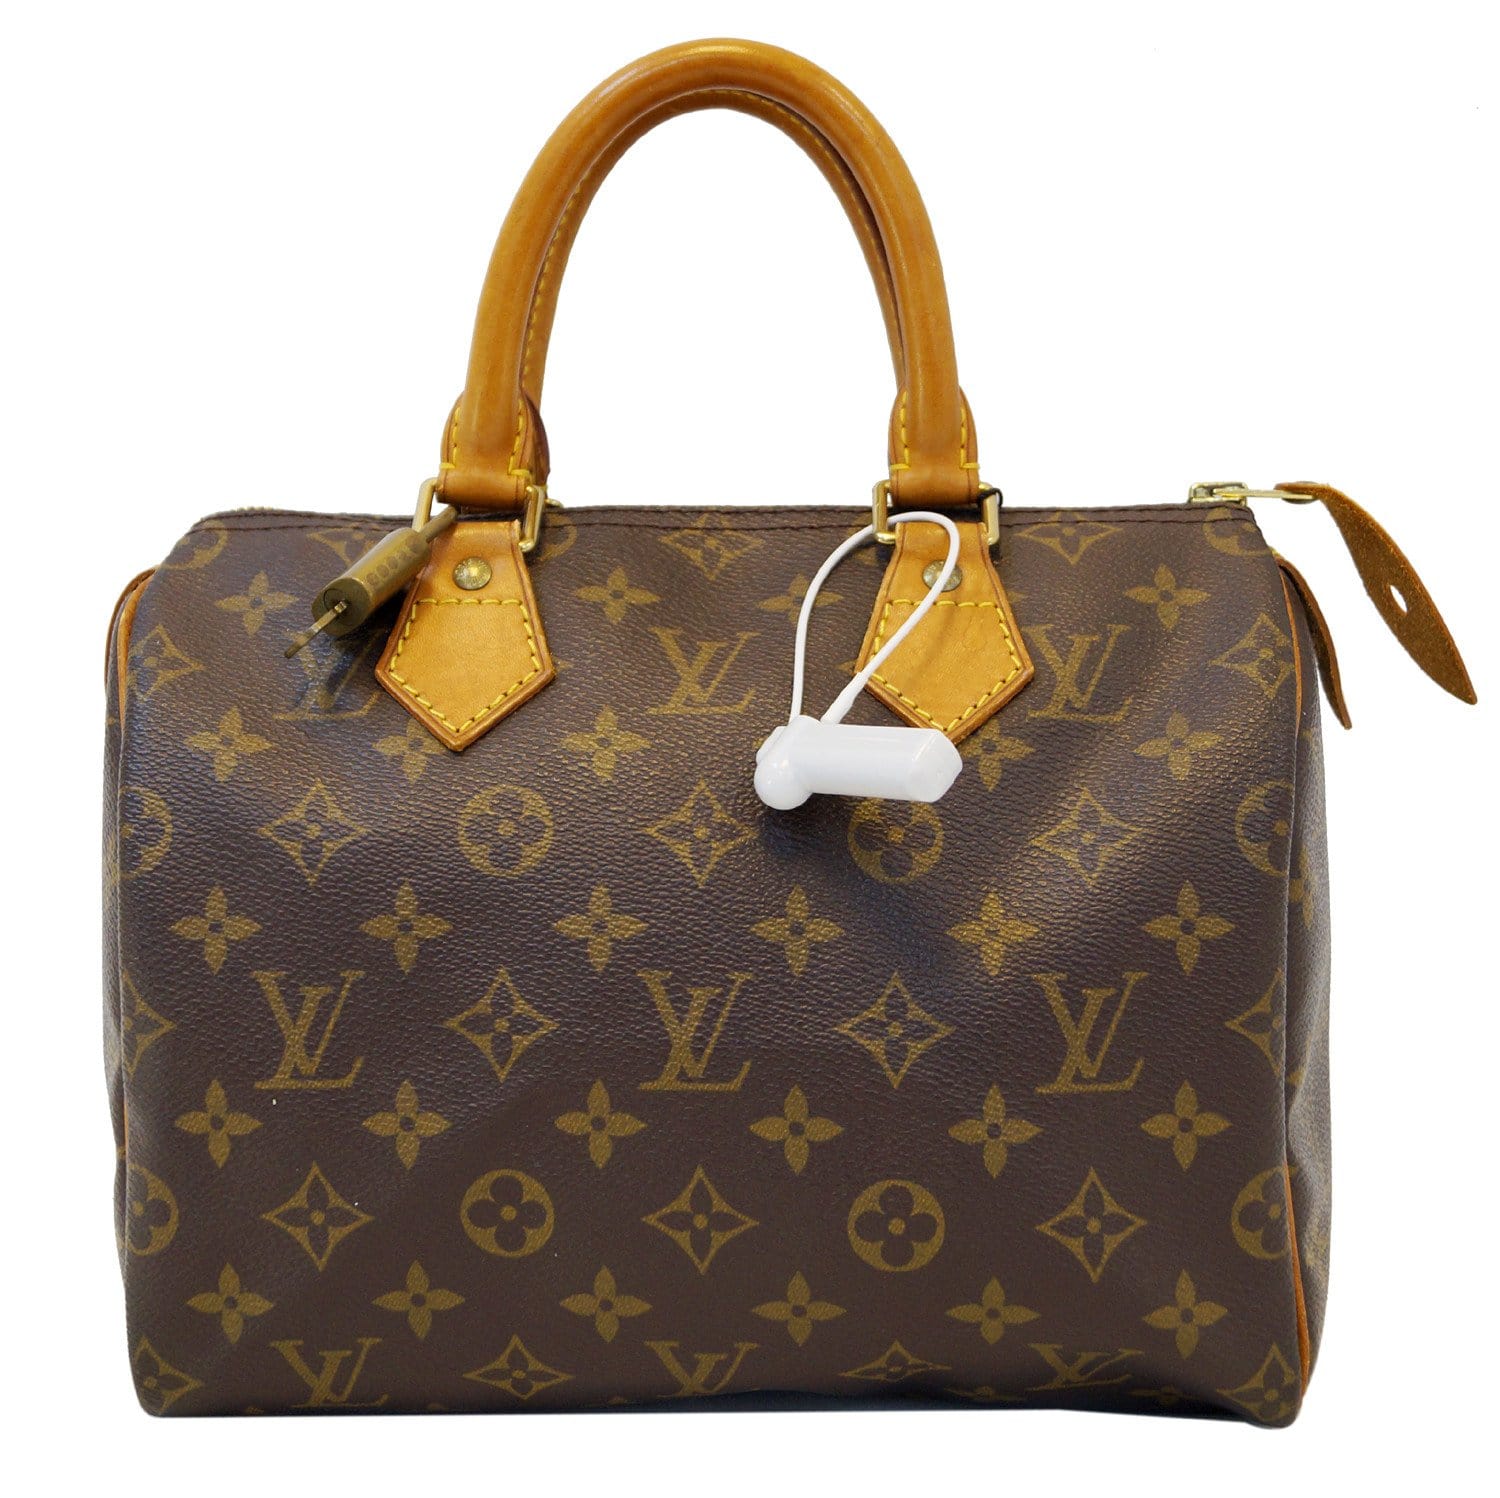 LOUIS VUITTON Monogram Speedy 25 Brown Hand Bag